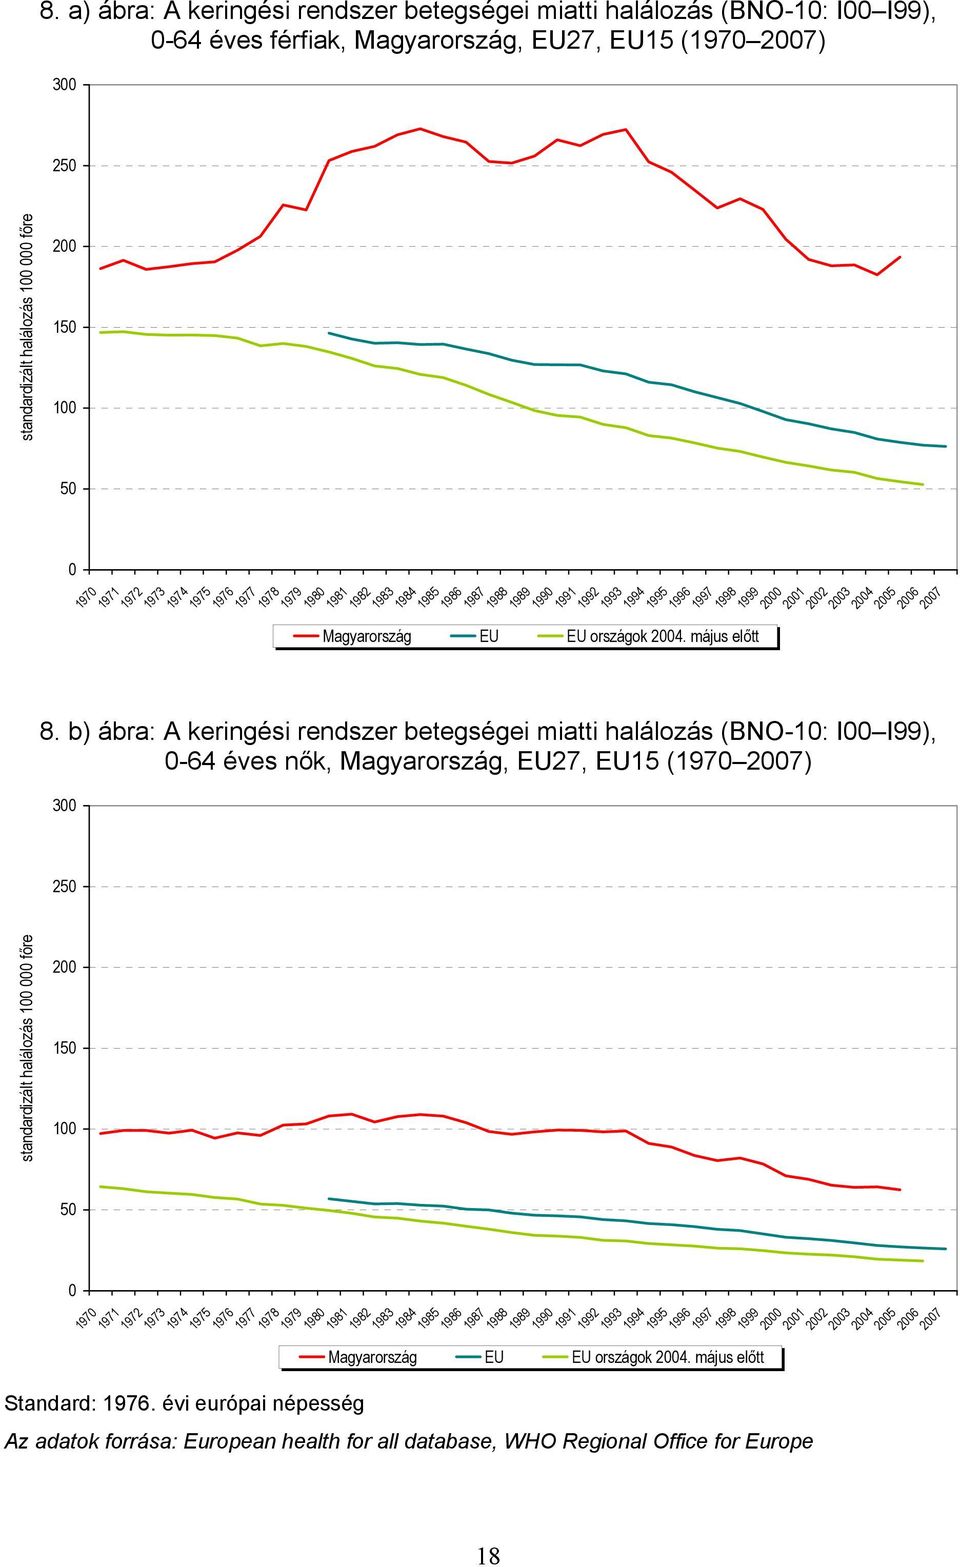 b) ábra: A keringési rendszer betegségei miatti halálozás (BNO-1: I I99), -64 éves nők, Magyarország, EU27, EU15 (197 27) 3 25 standardizált halálozás 1